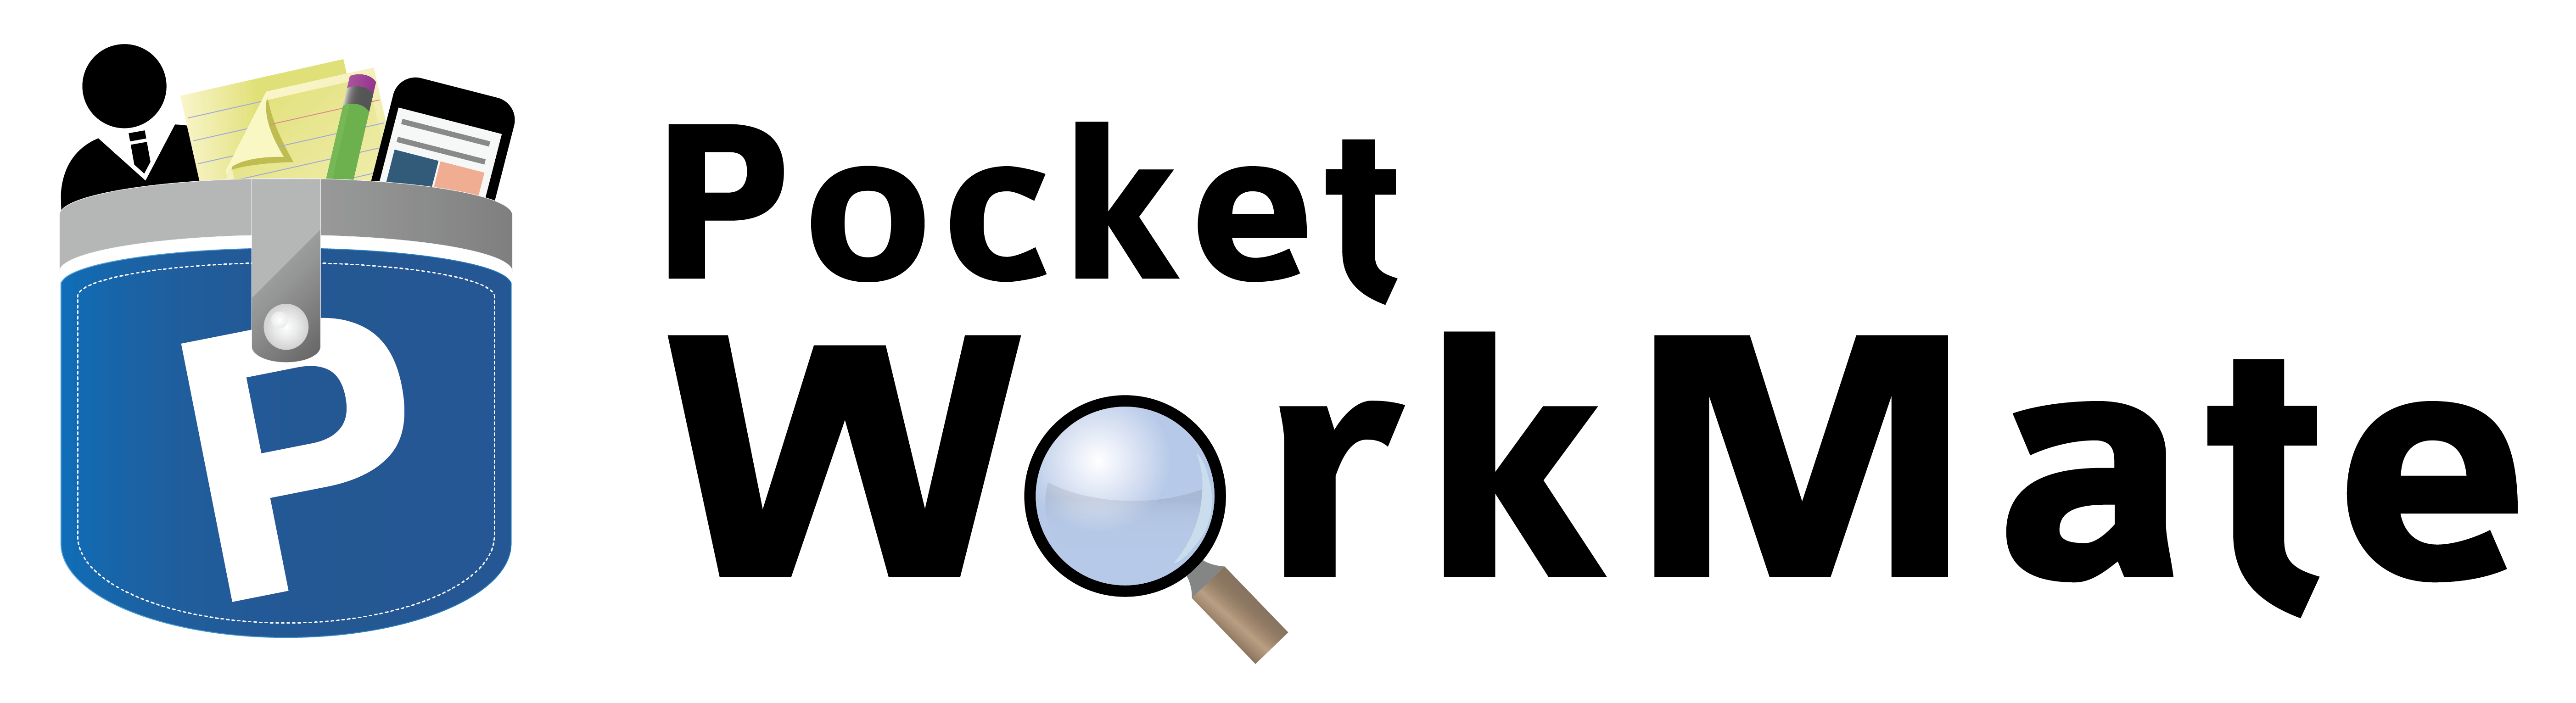 Pocket WorkMate